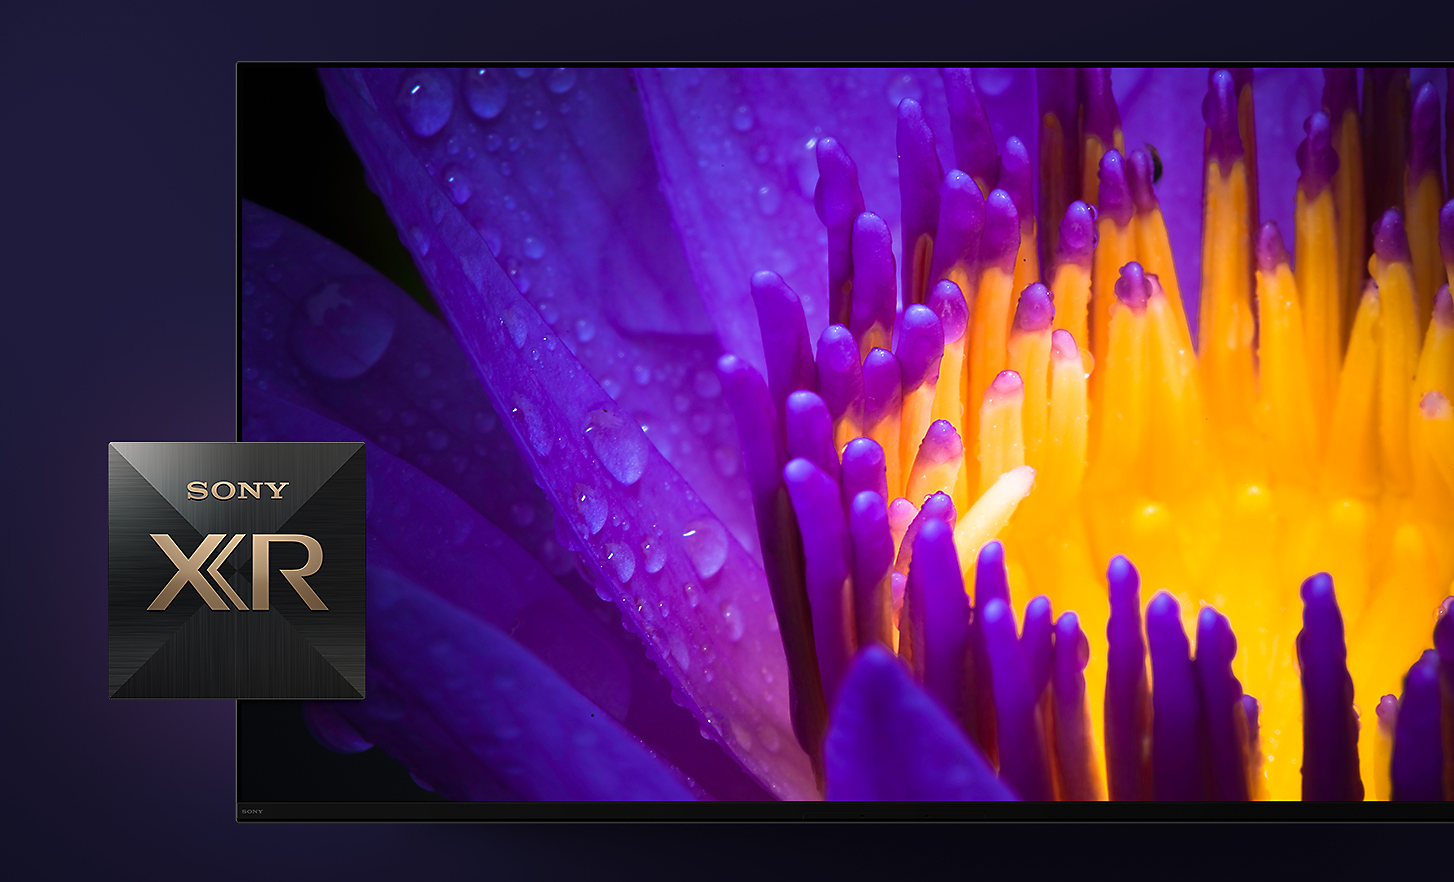 Detalle de la pantalla de TV que muestra los pétalos amarillos y púrpuras de una flor con el logotipo de Sony XR en primer plano